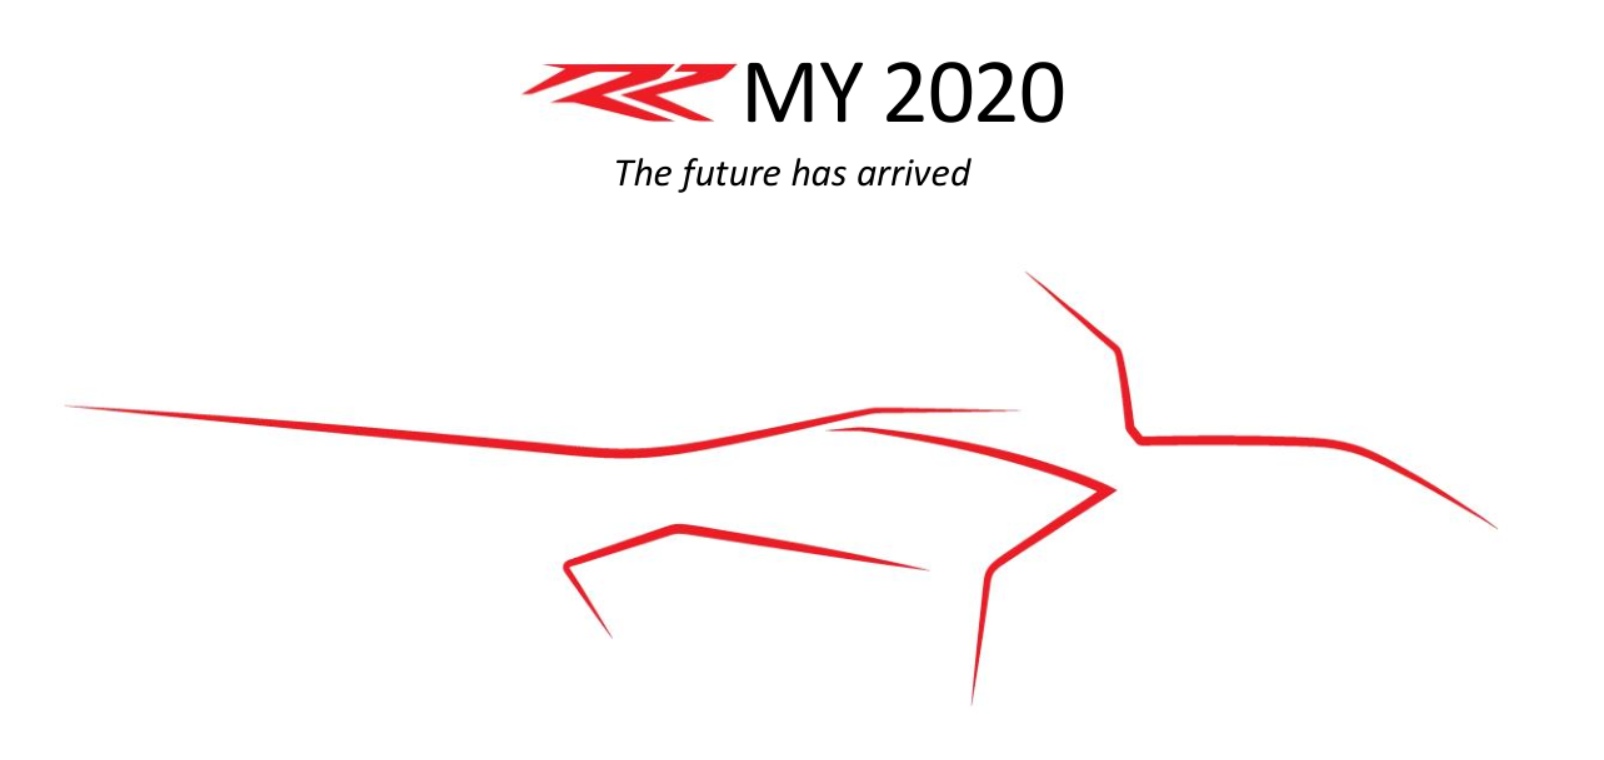 MY 2020